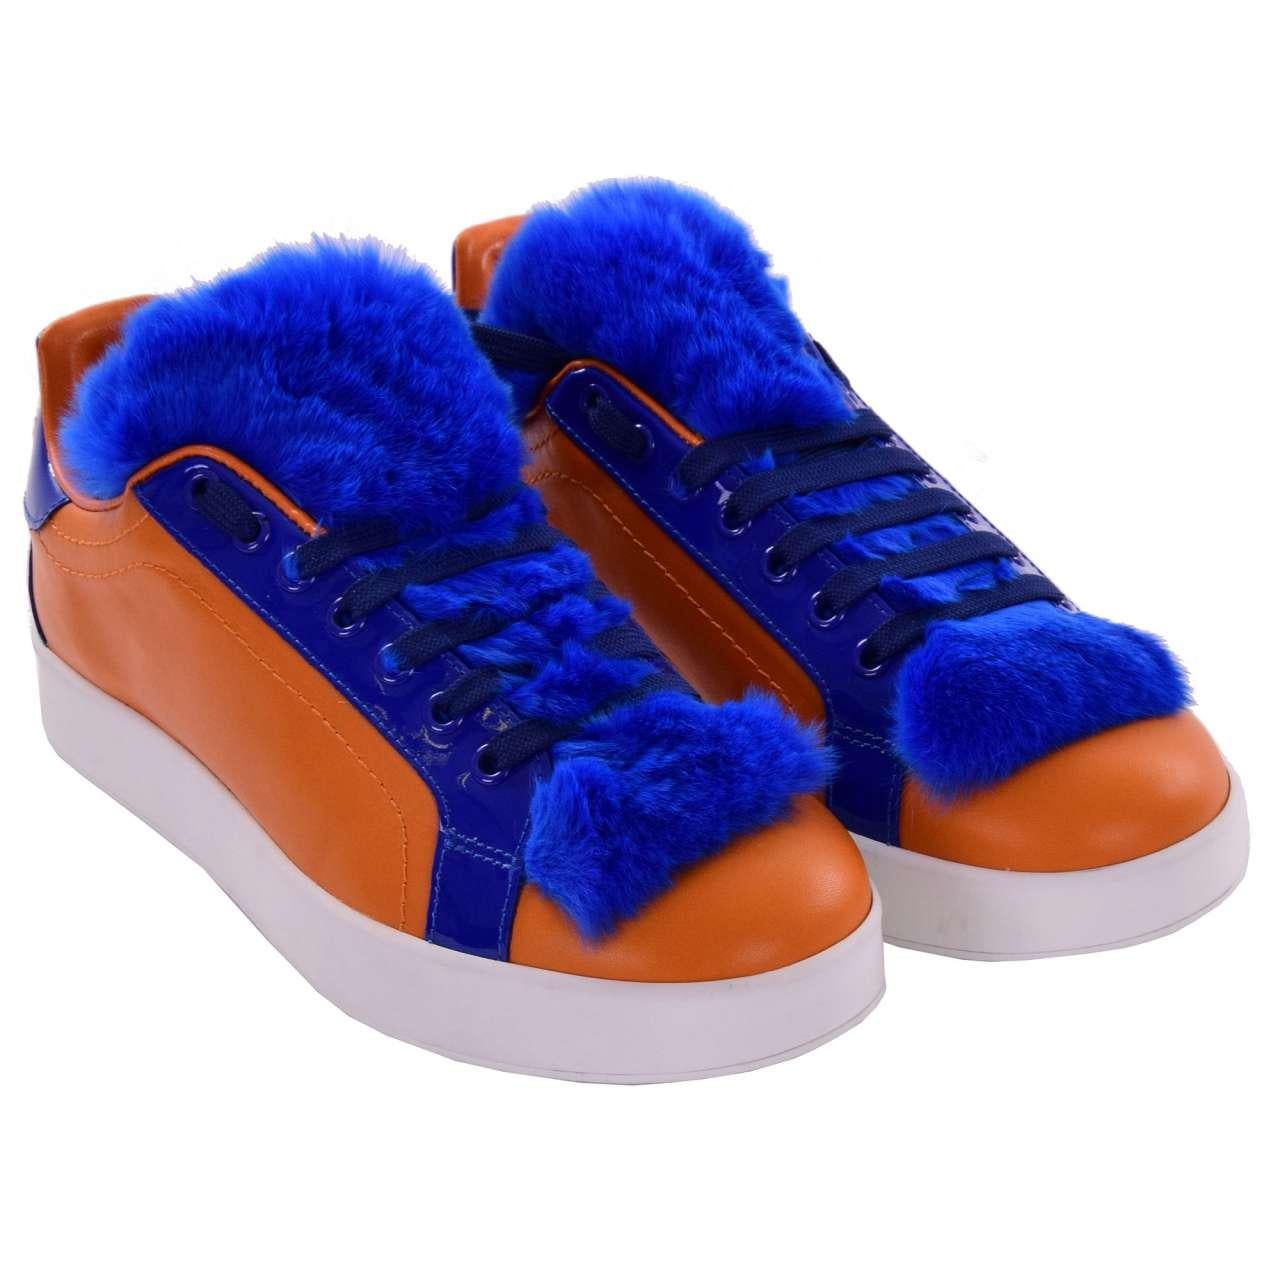 Dolce & Gabbana - Fur and Leather Sneaker PORTOFINO Orange Blue EUR 37 For Sale 1